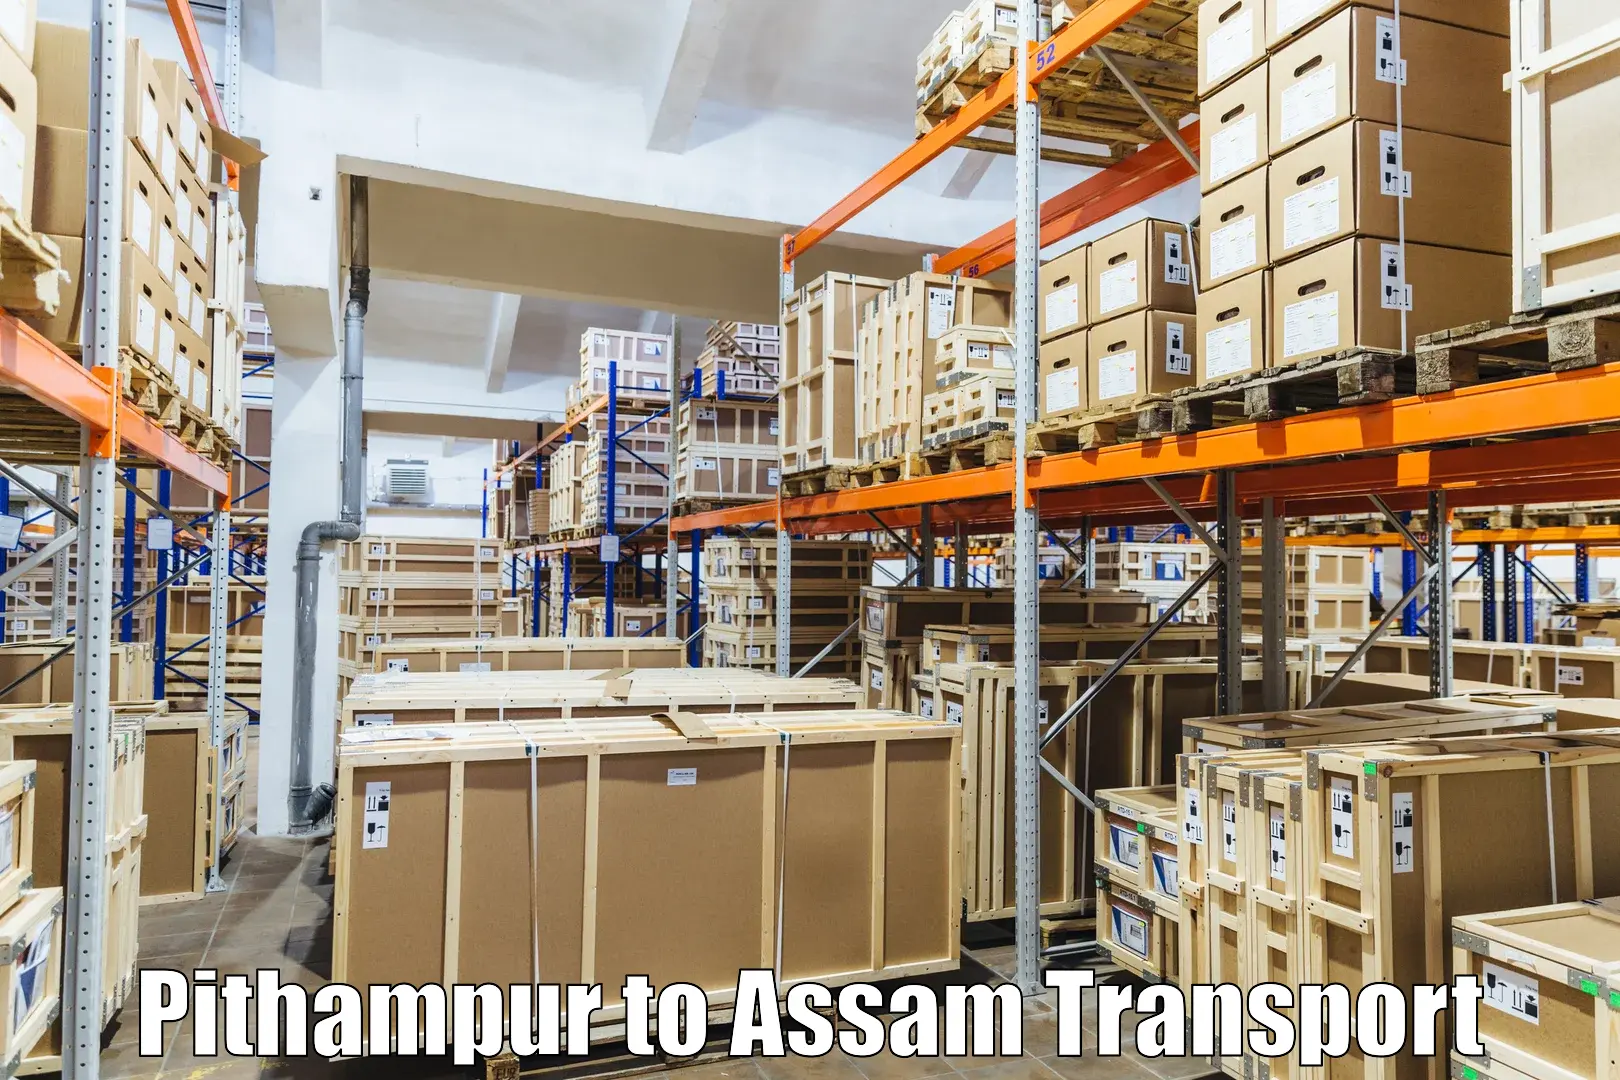 Furniture transport service Pithampur to Duliajan